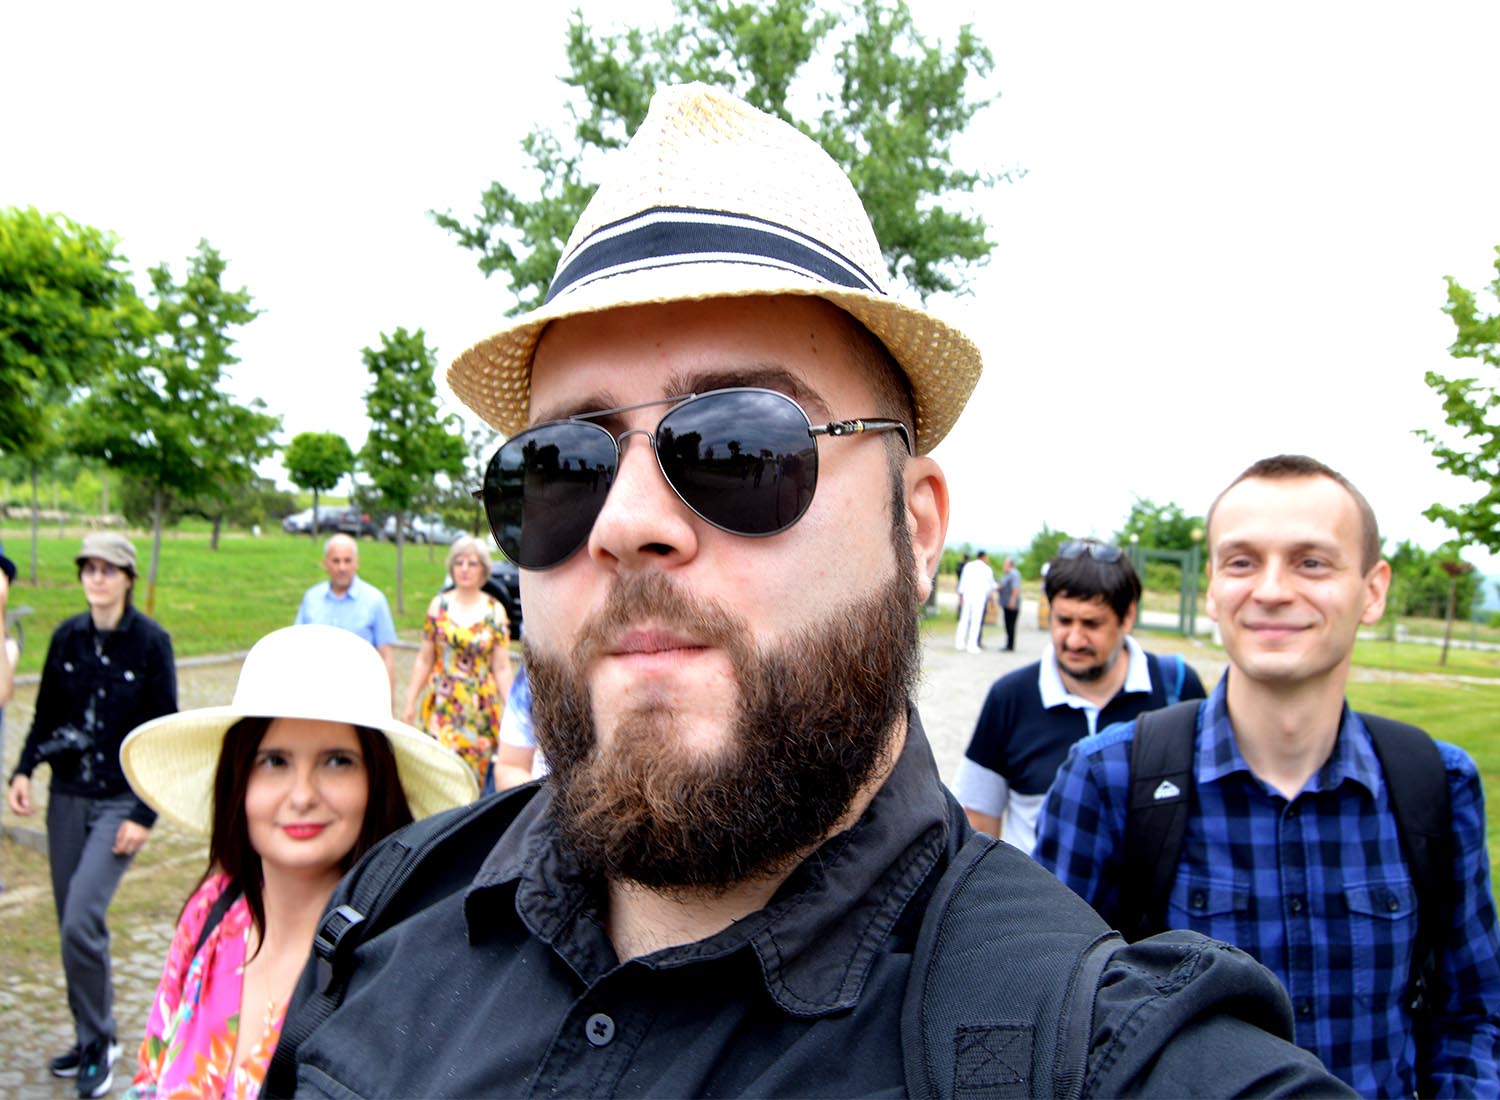  Selfie cu DSLR-ul - Nici nu mi-am scos bine aparatul că deja ceilalți bloggeri au pus ochii pe mine 